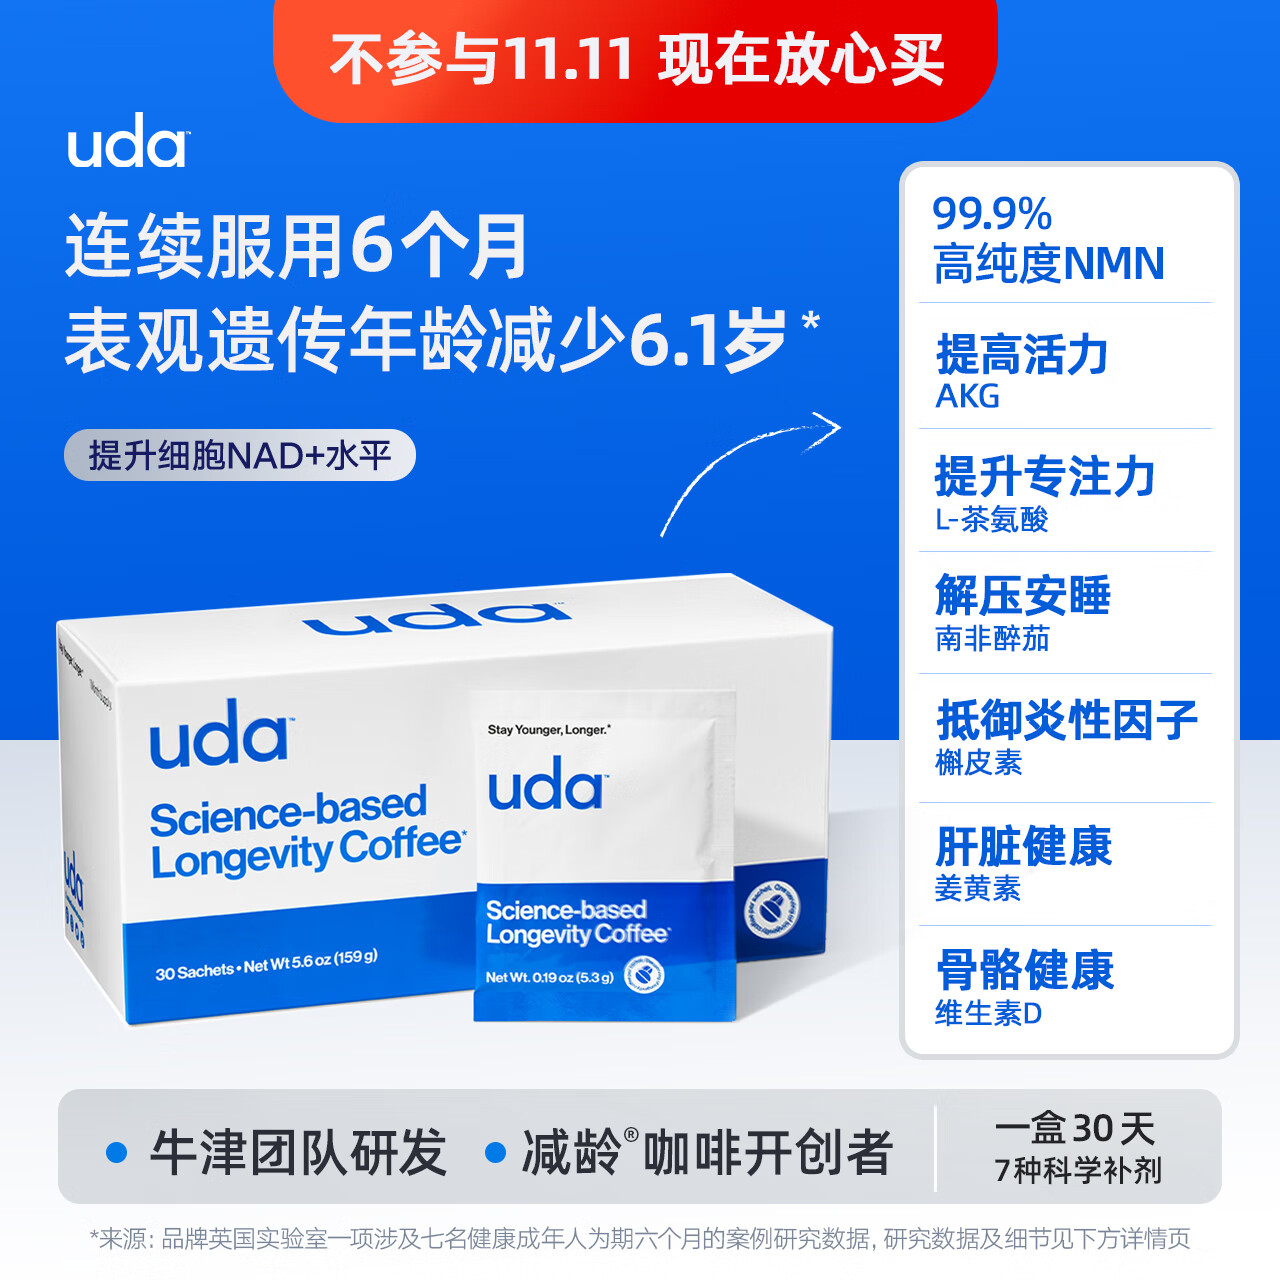 uda减龄咖啡 NAD+配方 原装进口 优质速溶咖啡【交个朋友直播专享】 1盒30袋